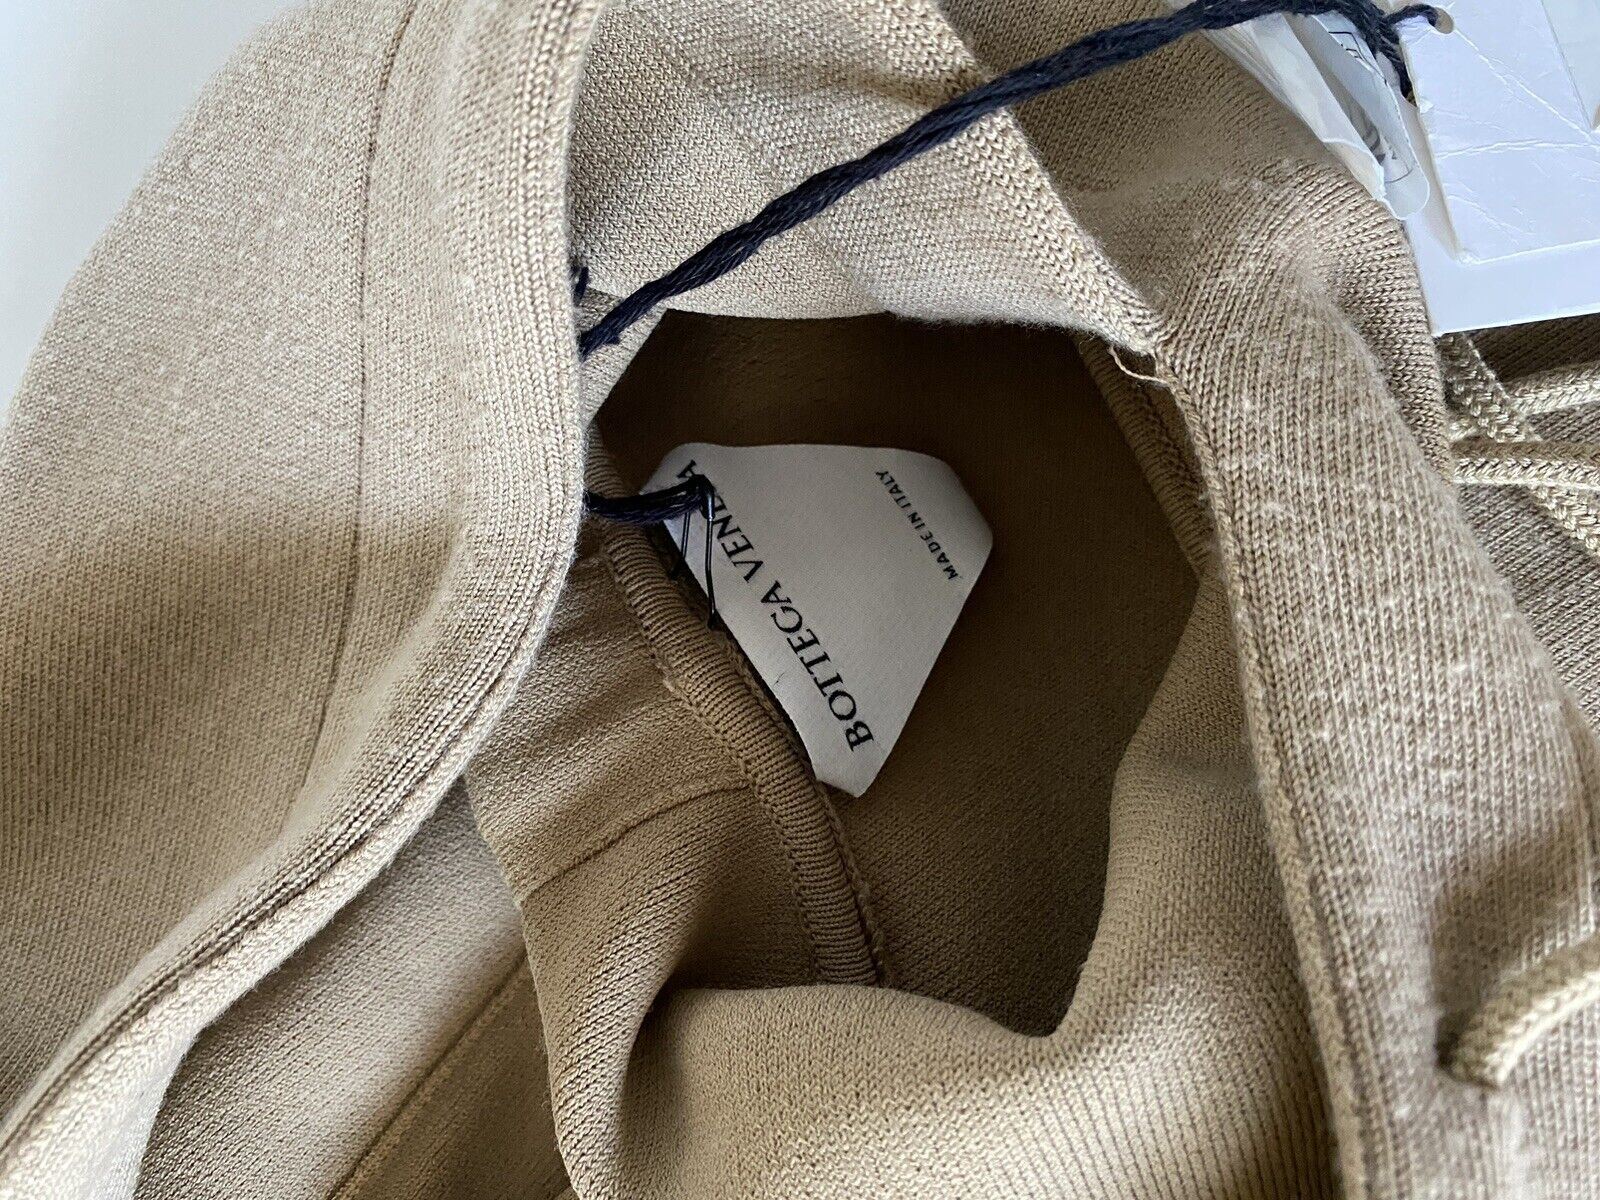 NWT $1750 Женская толстовка с капюшоном Bottega Veneta из шерстяного свитера бежевого цвета M 647529 Италия 